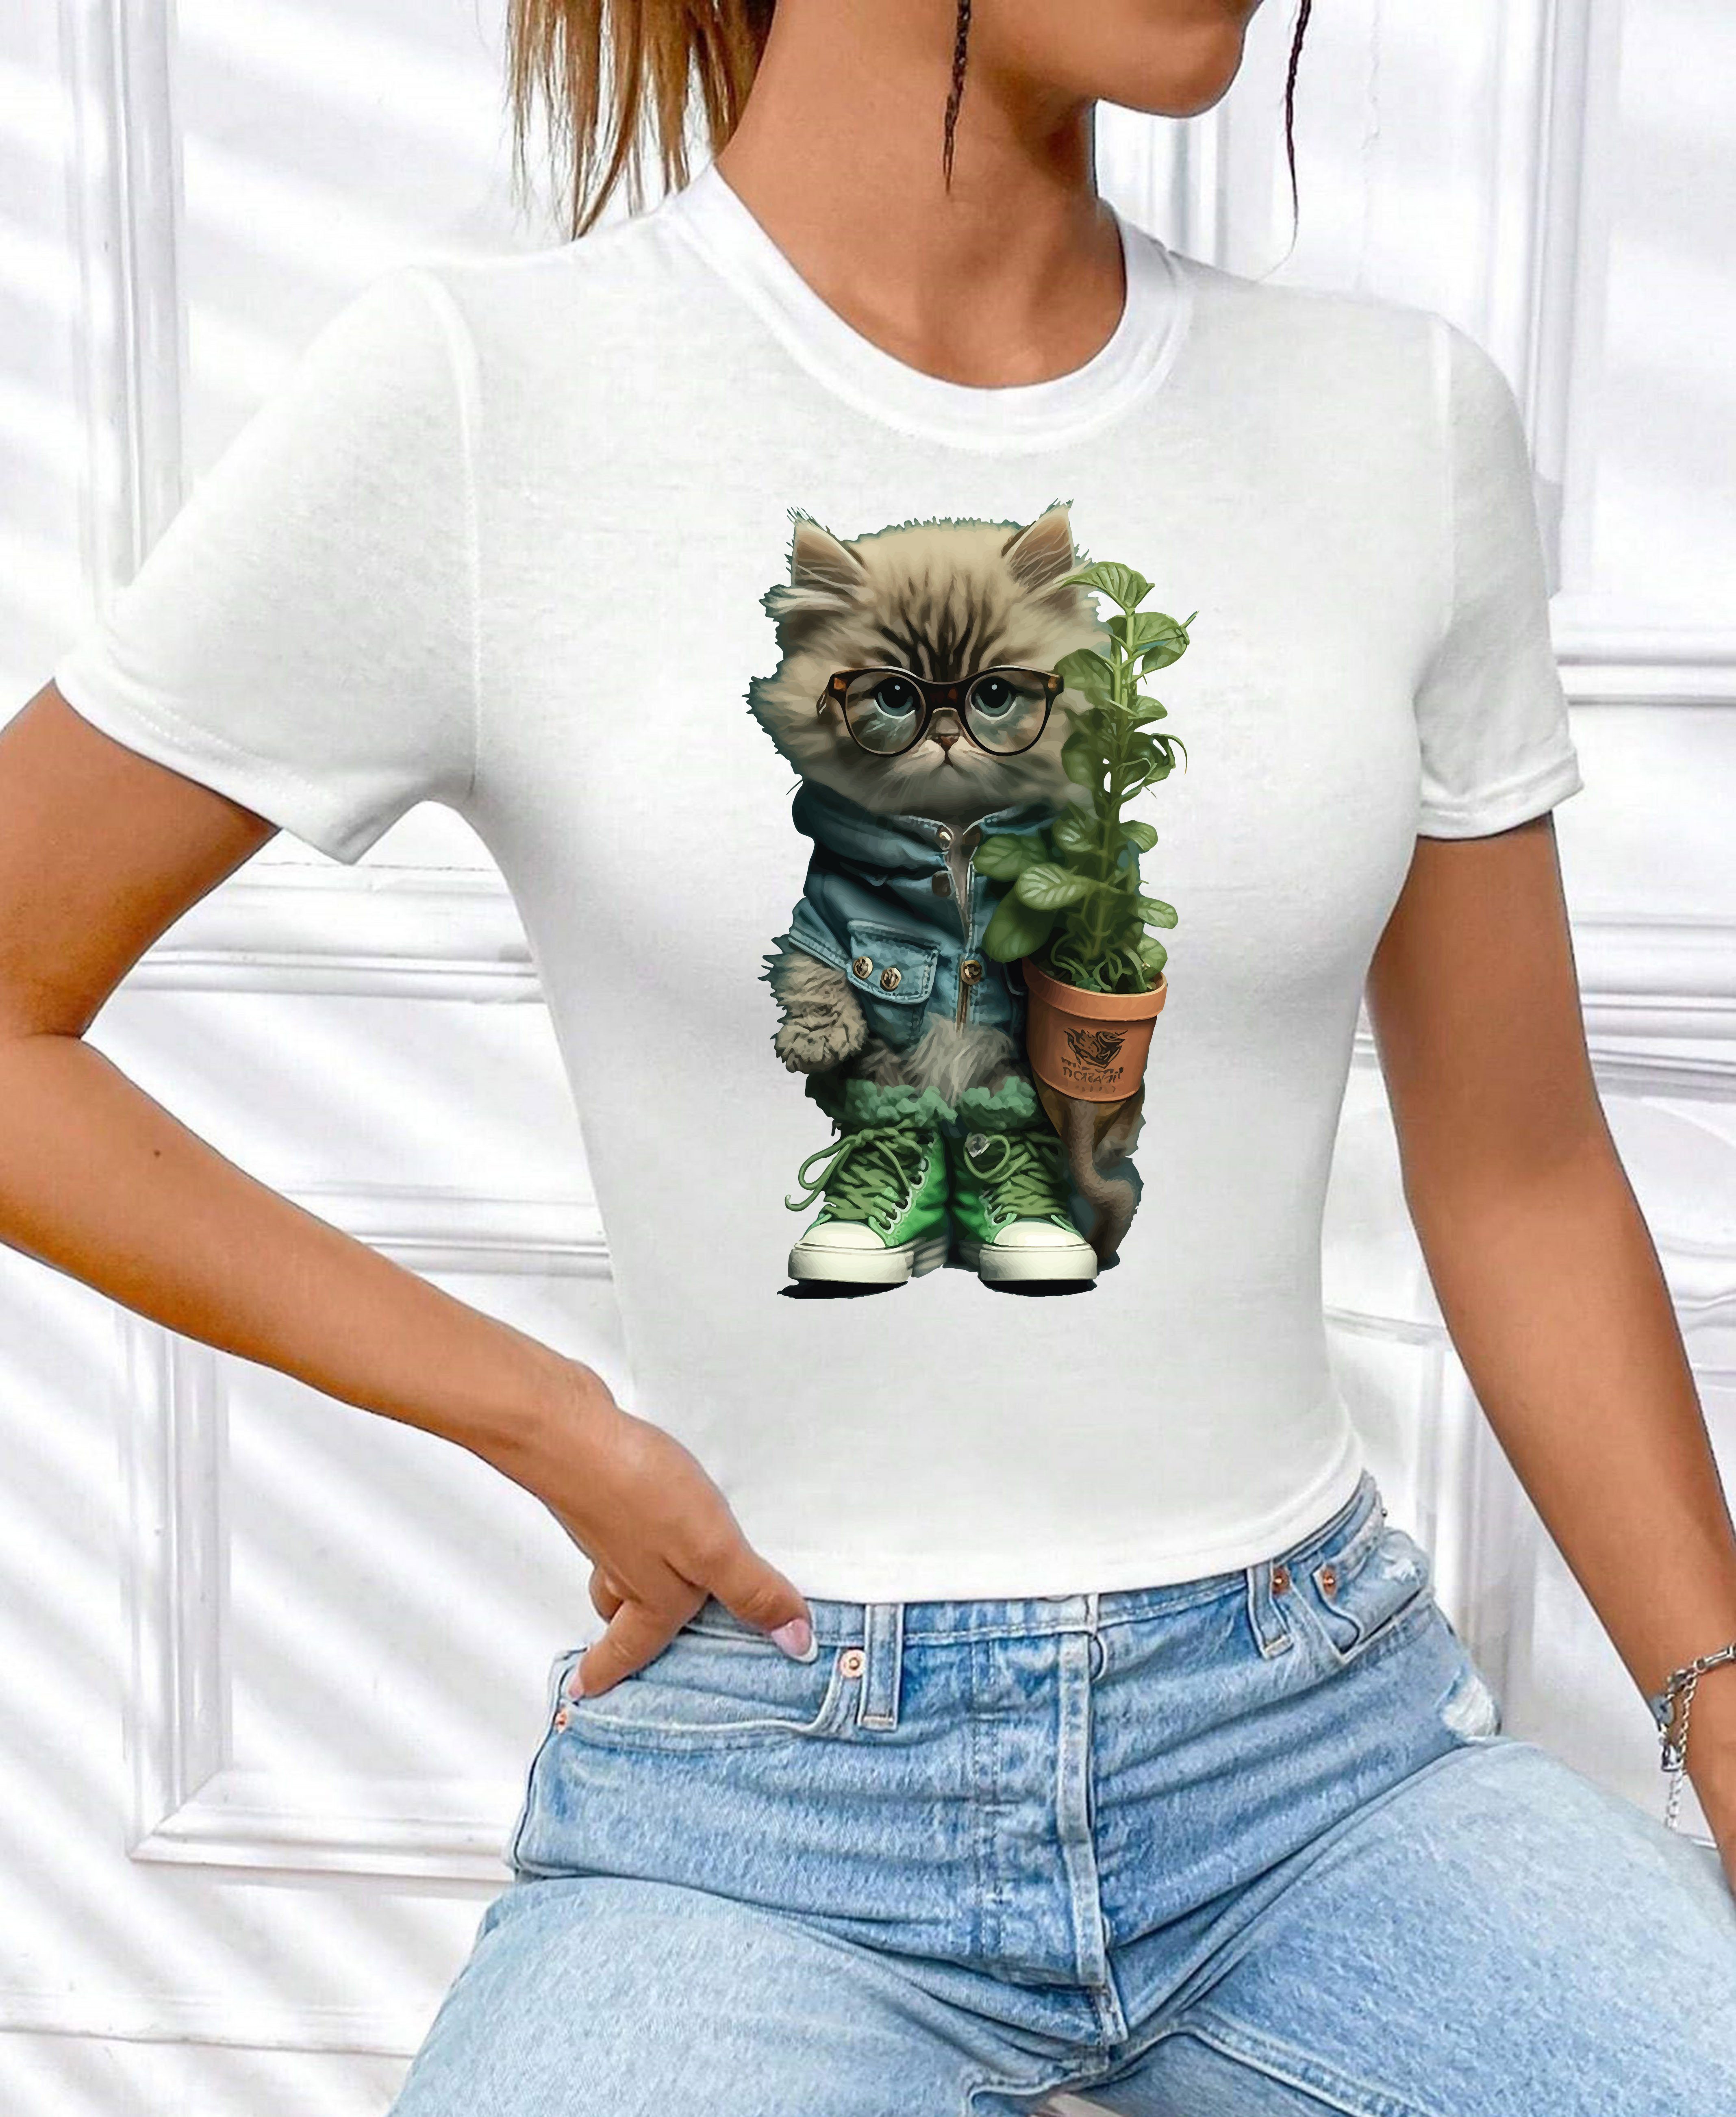 lizenziertem mit Garten Top Katze" aus Print Weiß_1 "Cat Shirt Baumwolle, T-Shirt kurzarm Freizeit in Unifarbe, Blume Rundhals Damen RMK